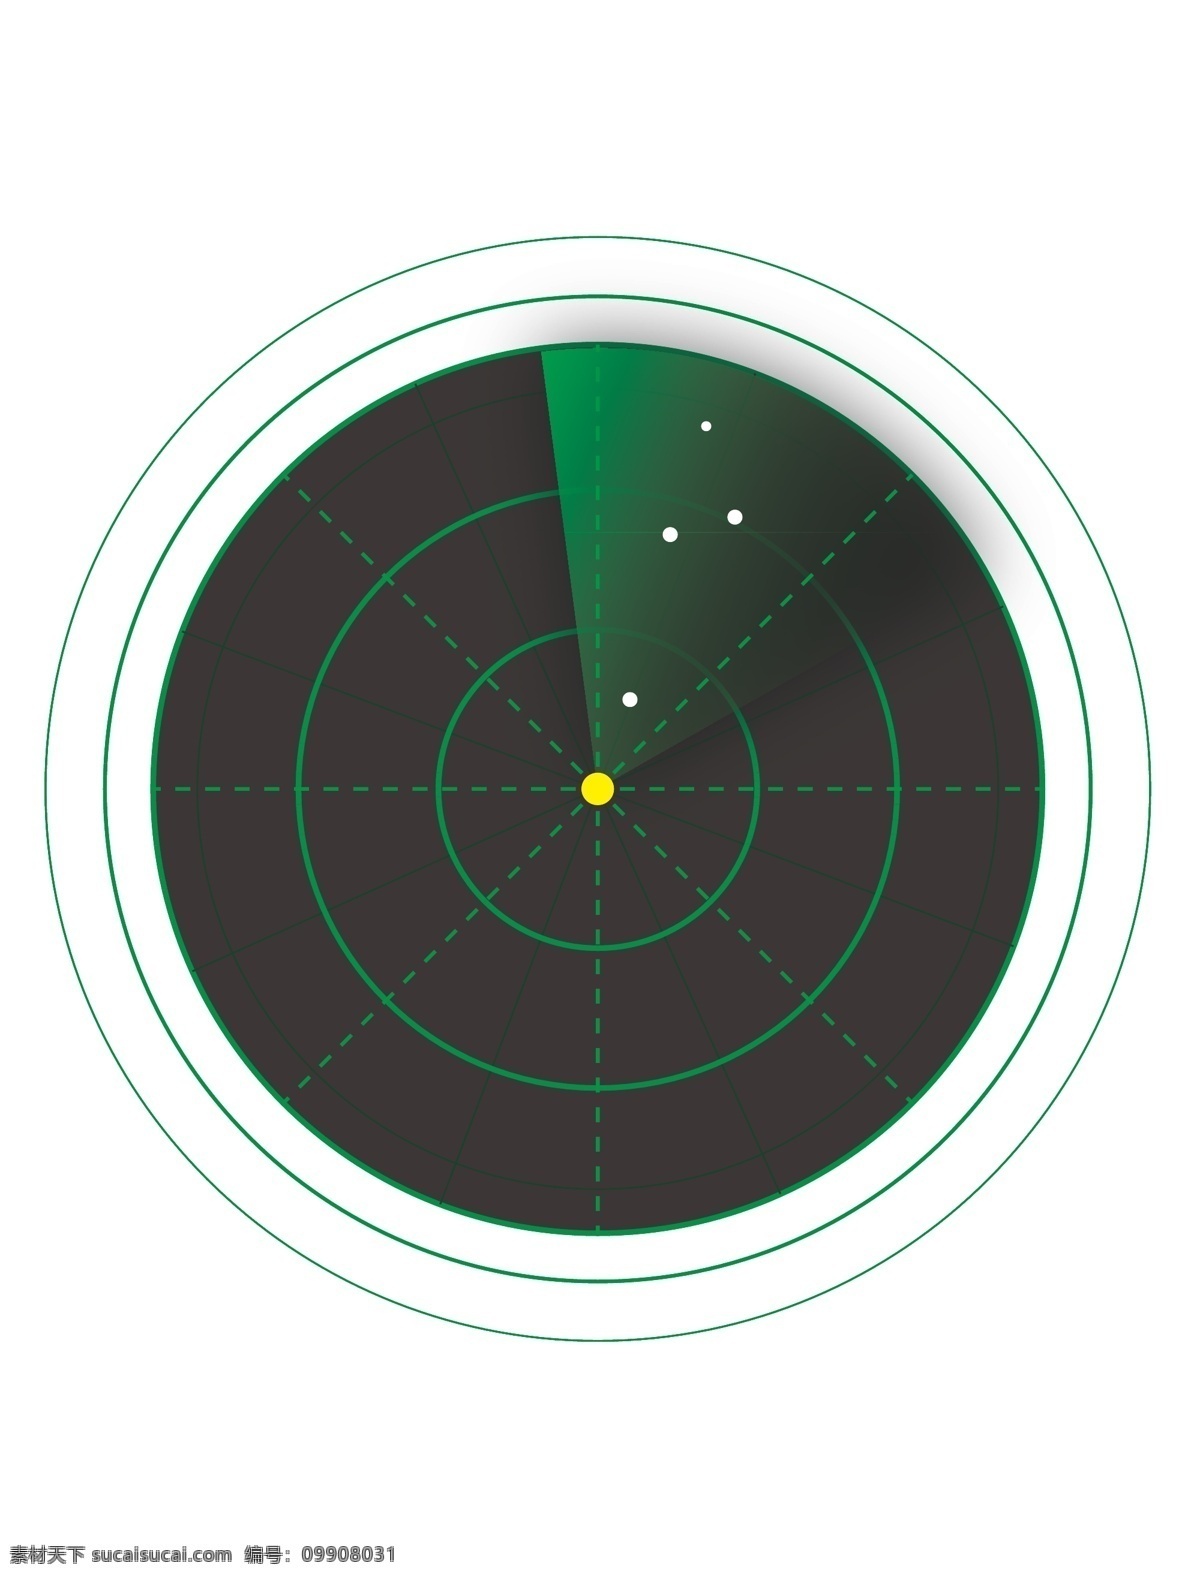 电 雷达 扫描仪 通讯 图标 icon 闪电 电子雷达 扫描 雷达icon 雷达图标 雷达logo 雷达标志 logo设计 图标设计 icon设计 标志图标 其他图标